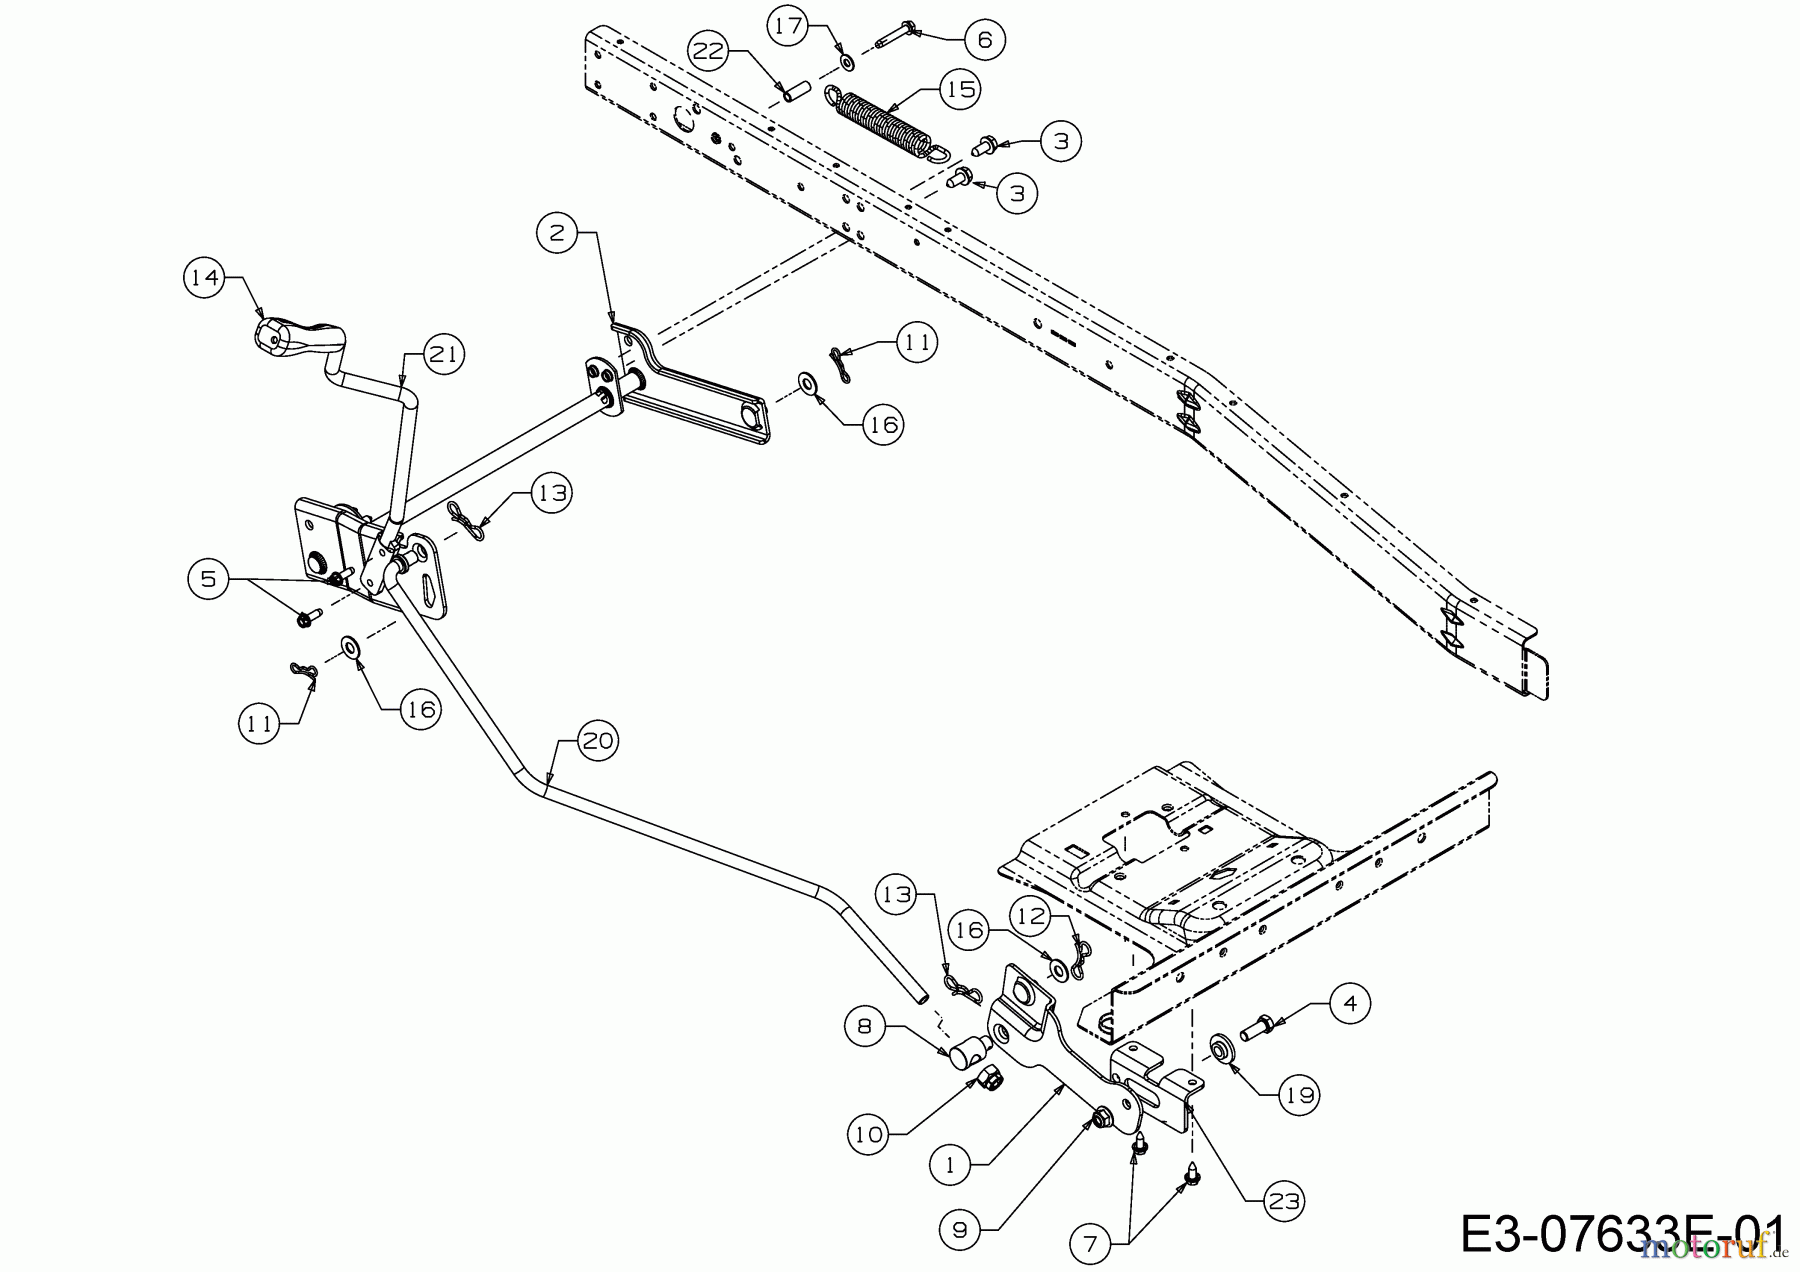  WOLF-Garten Expert Rasentraktoren Expert Scooter Pro 13B226HD650  (2016) Mähwerksaushebung